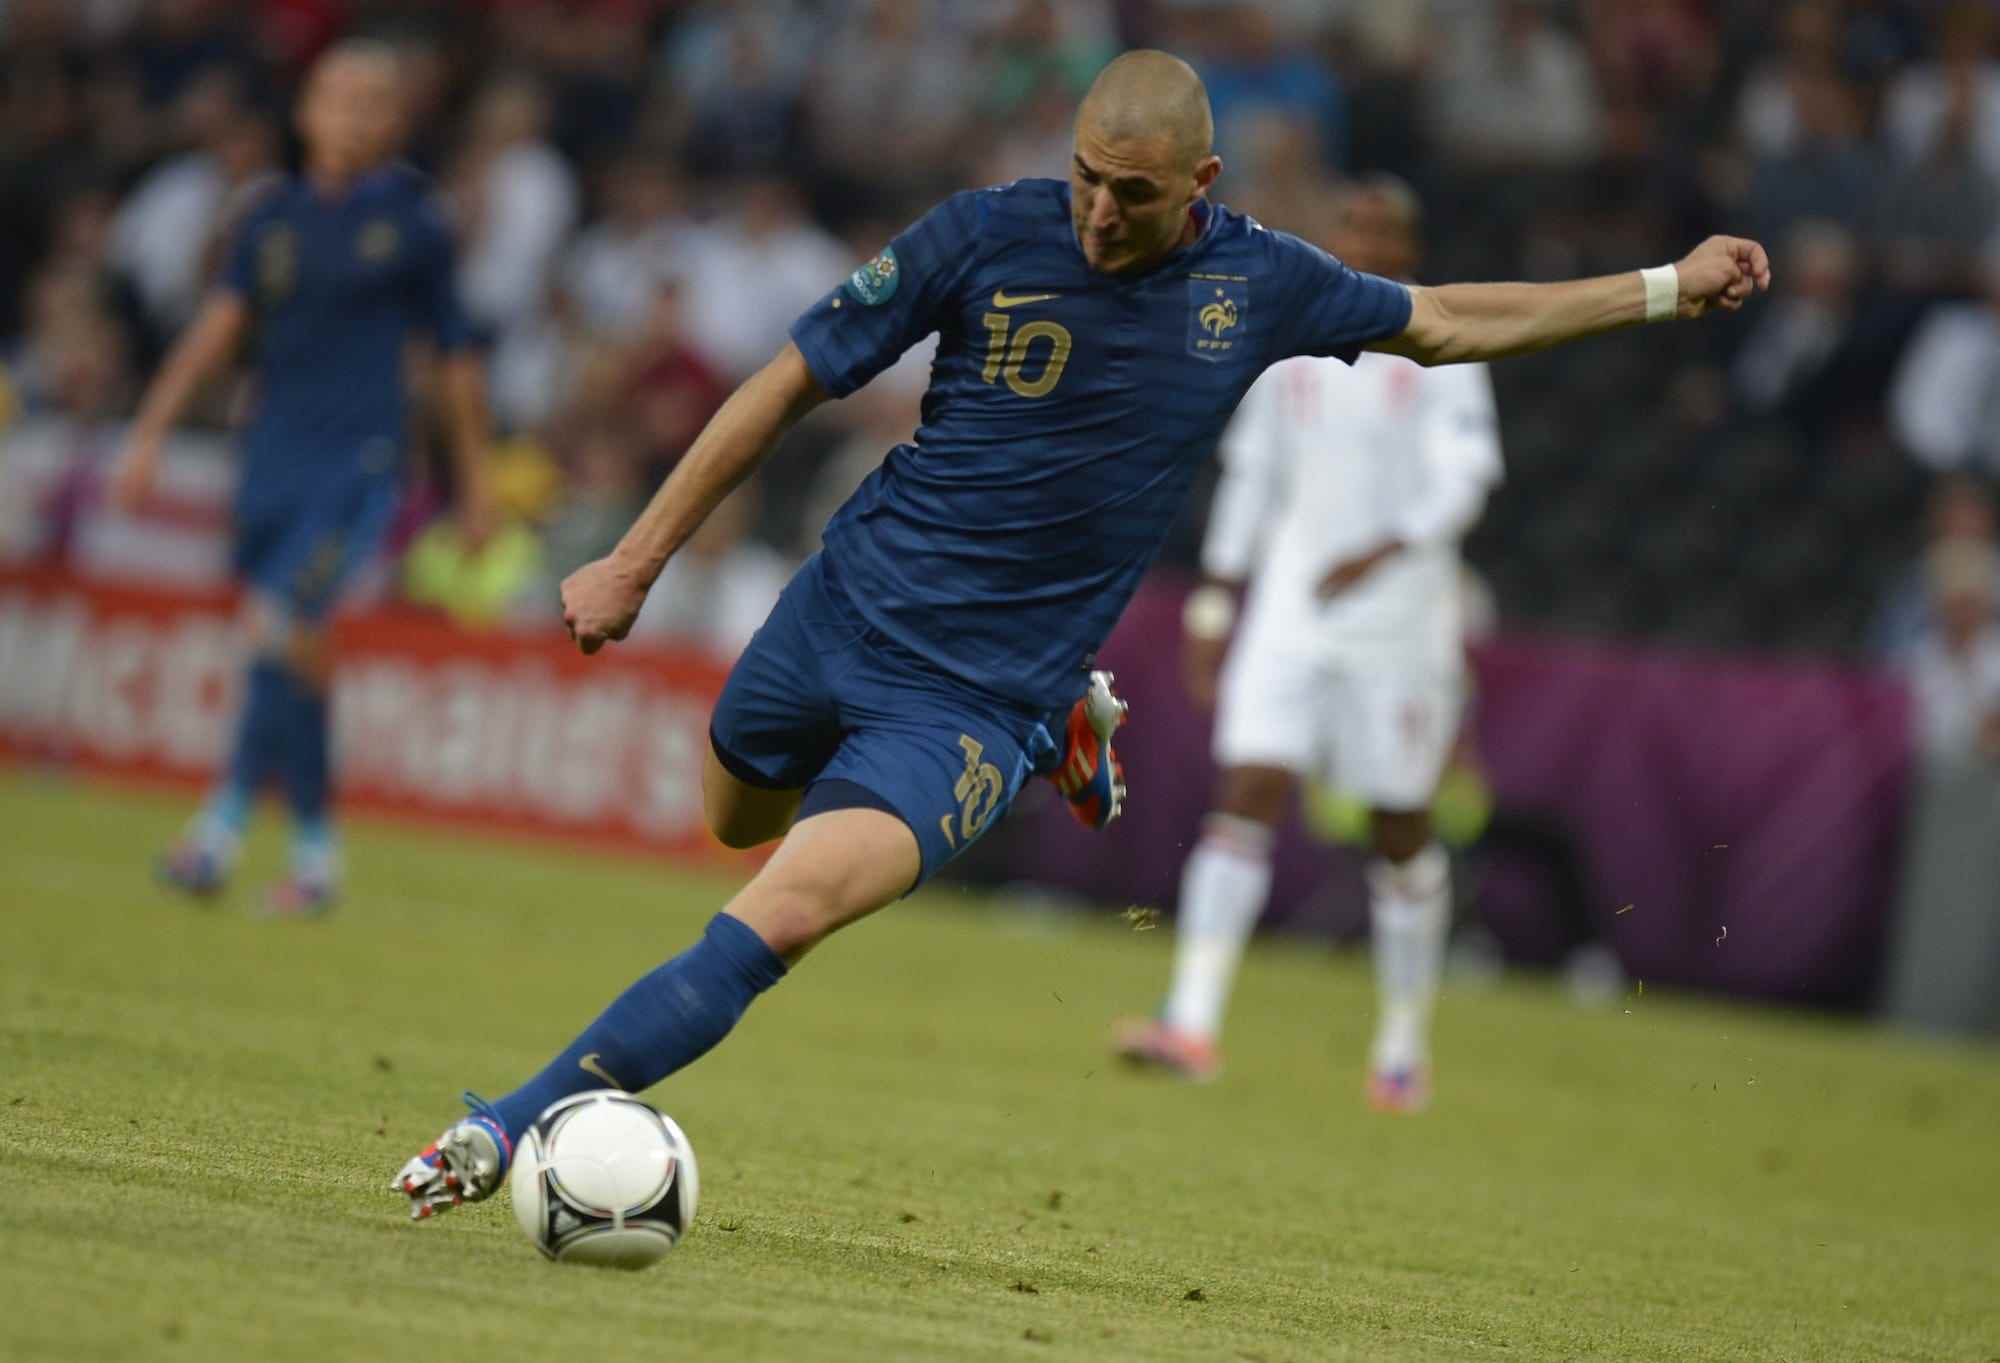 Der französische Stürmer Karim Benzema schießt während der Euro-2012-Meisterschafts-Fußballabgleichung Frankreich gegen England am 11. Juni 2012 in der Donbass-Arena in Donetsk.